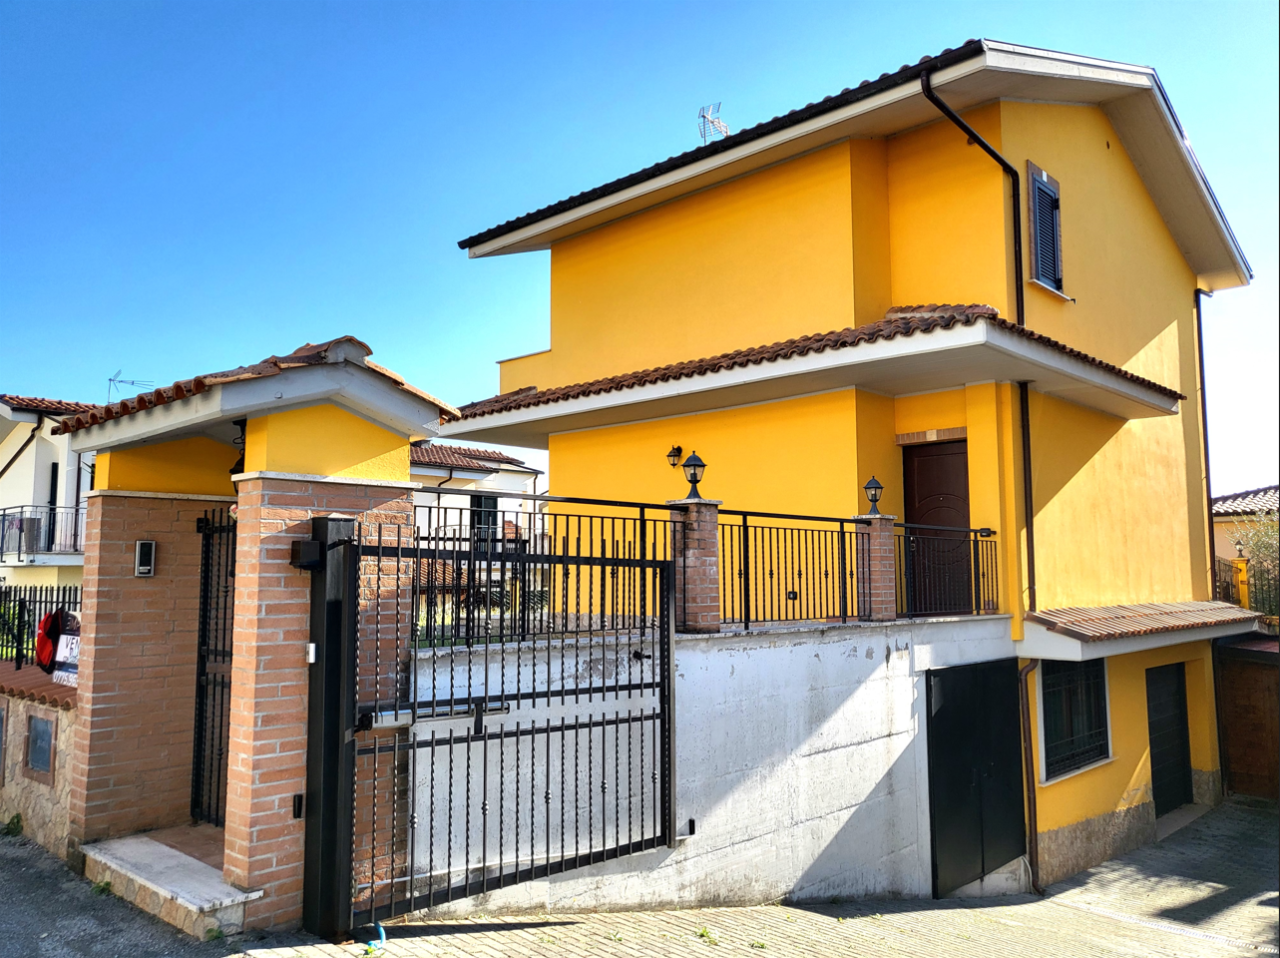 Villa in vendita a Piglio, 8 locali, prezzo € 220.000 | PortaleAgenzieImmobiliari.it